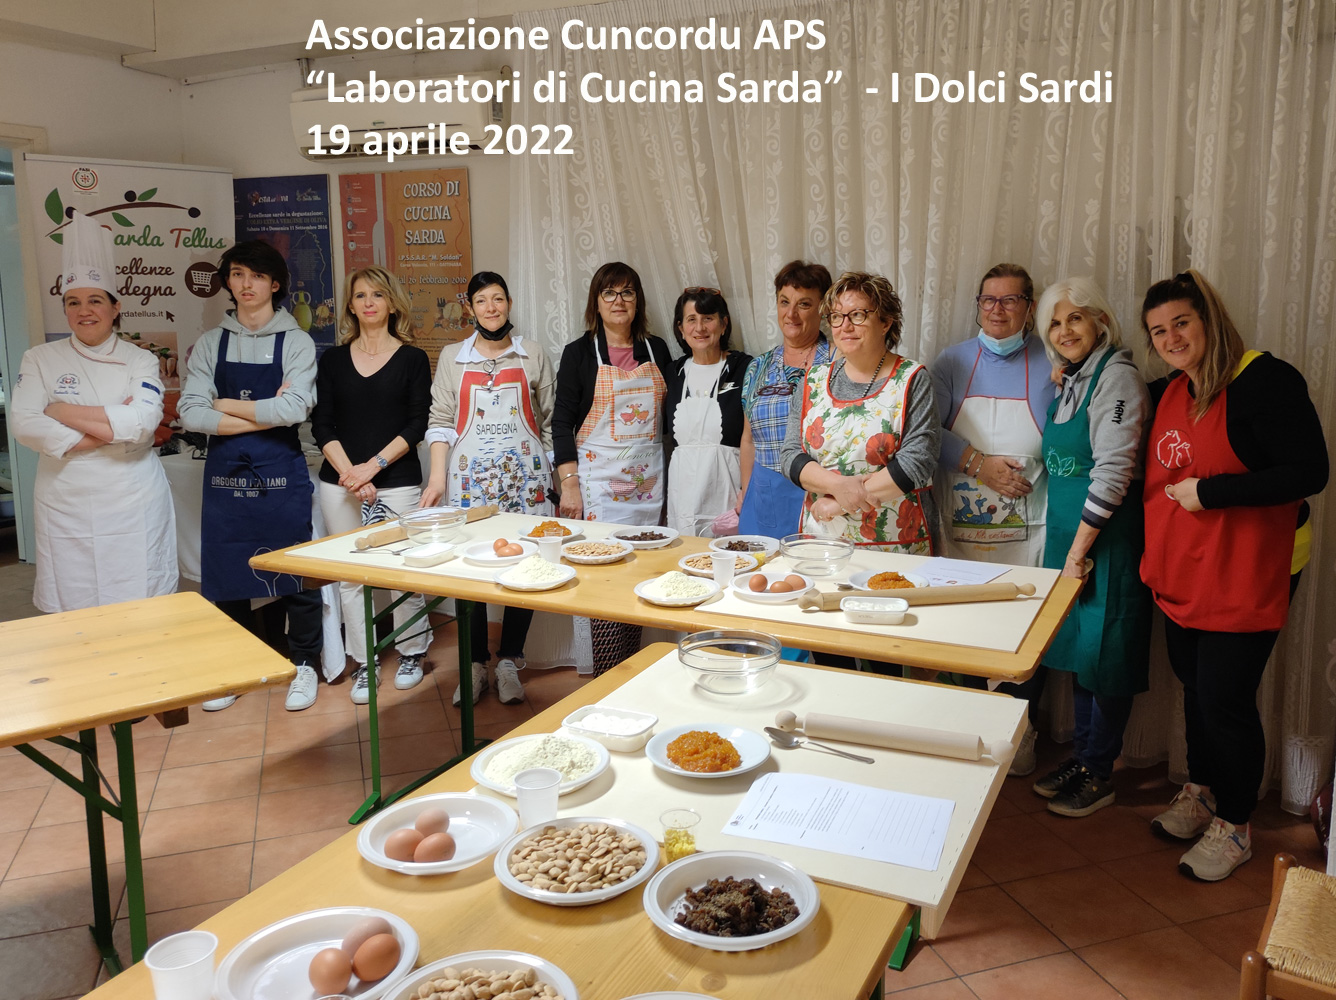 19-04-2022 Laboratori di Cucina Sarda - "I Dolci Sardi"